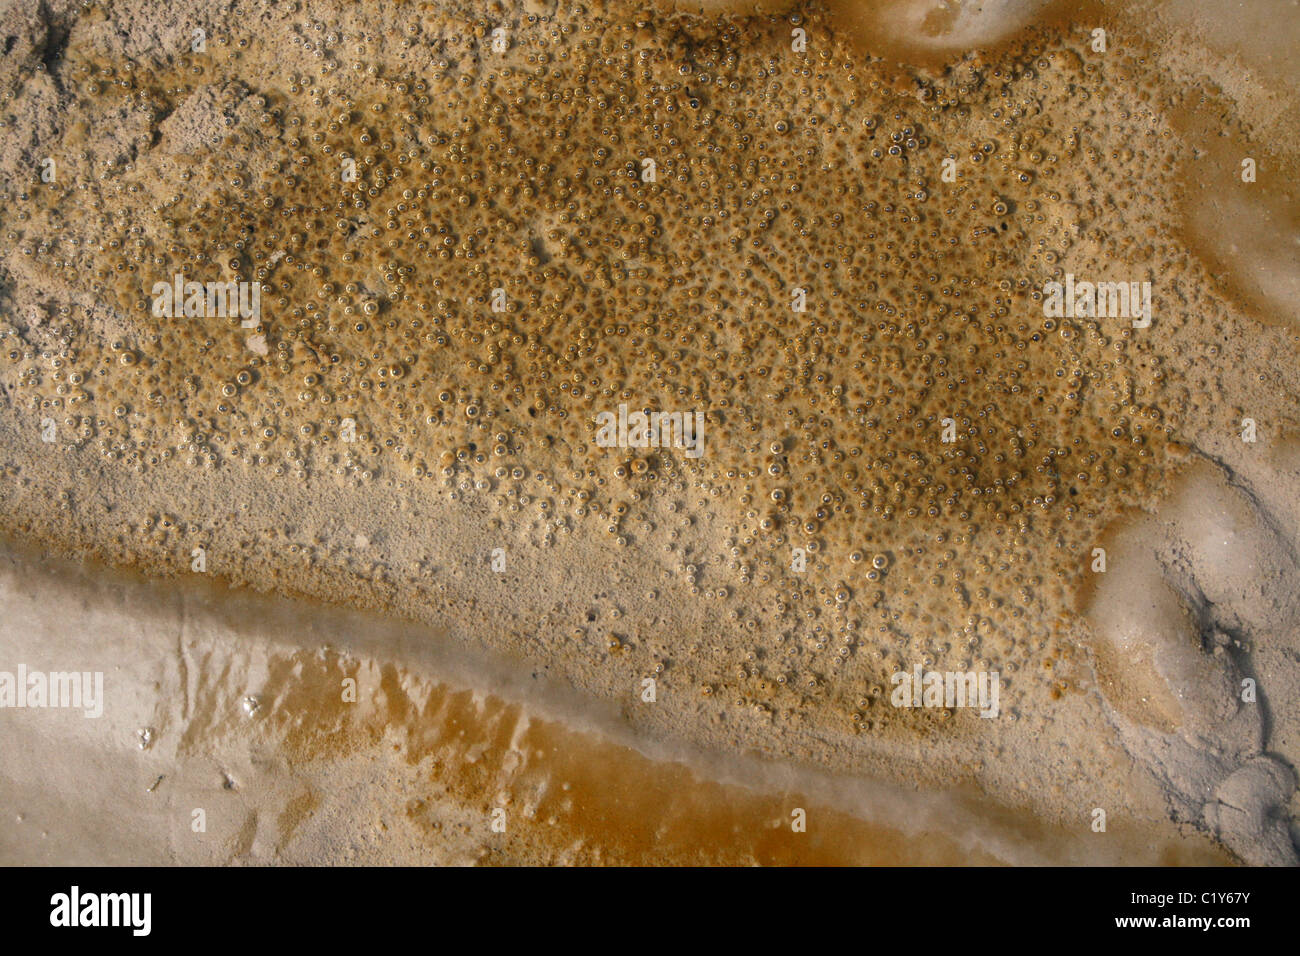 Bolle di ossigeno essendo prodotta da Photosynthesizing diatomee sulla superficie della sabbia, costa di Sefton, Regno Unito Foto Stock